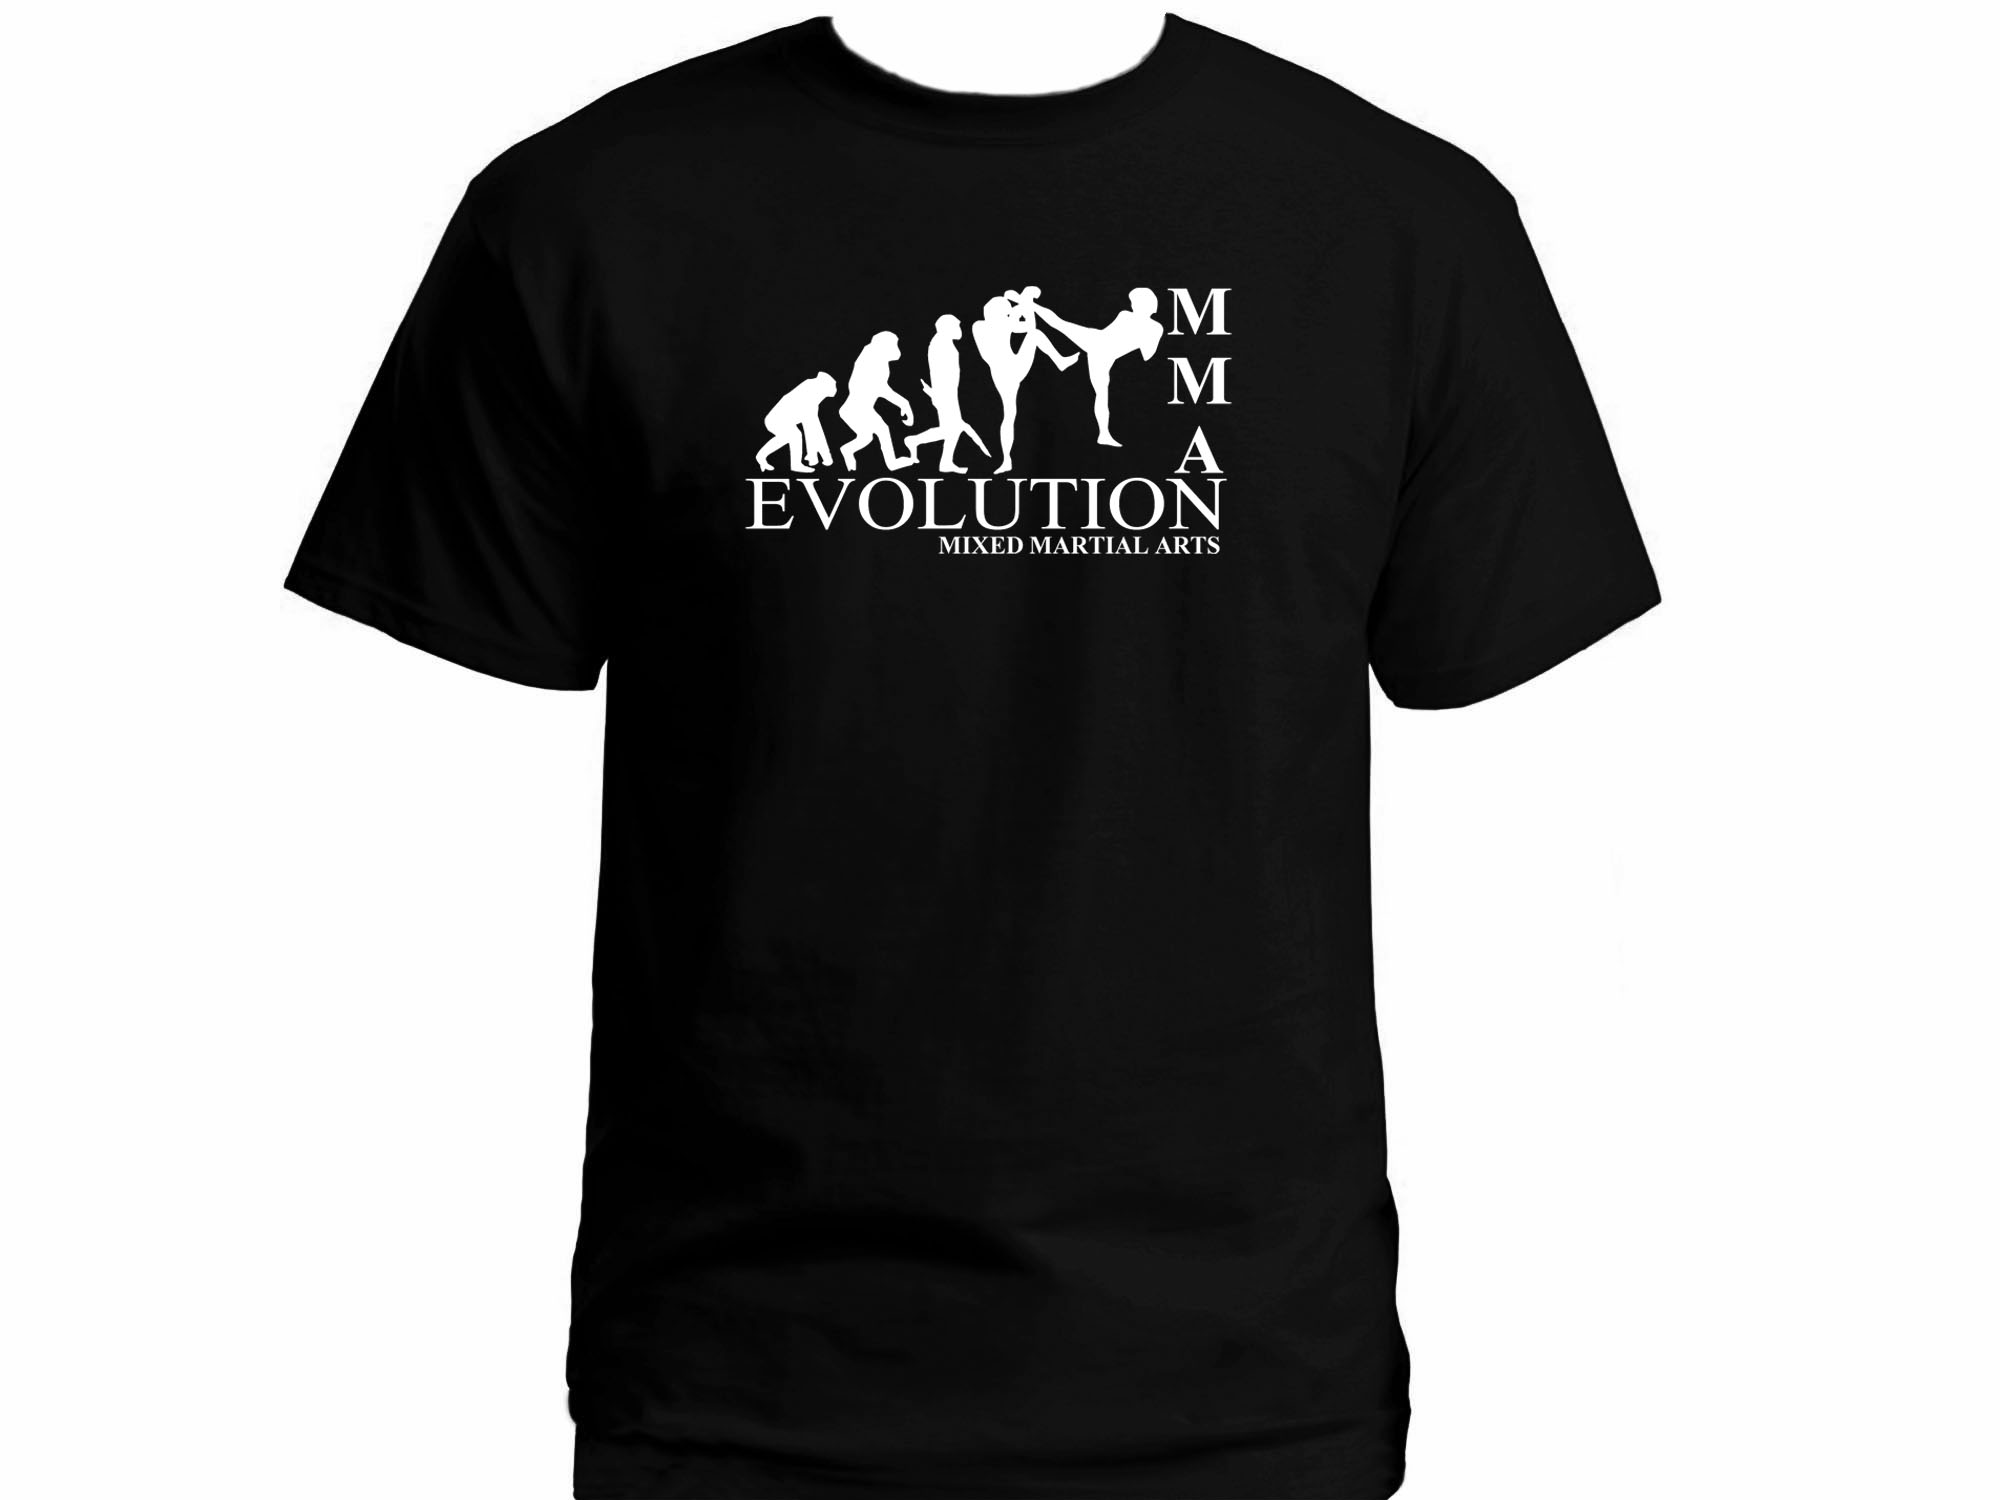 MMA evolution mixed martial arts t-shirt